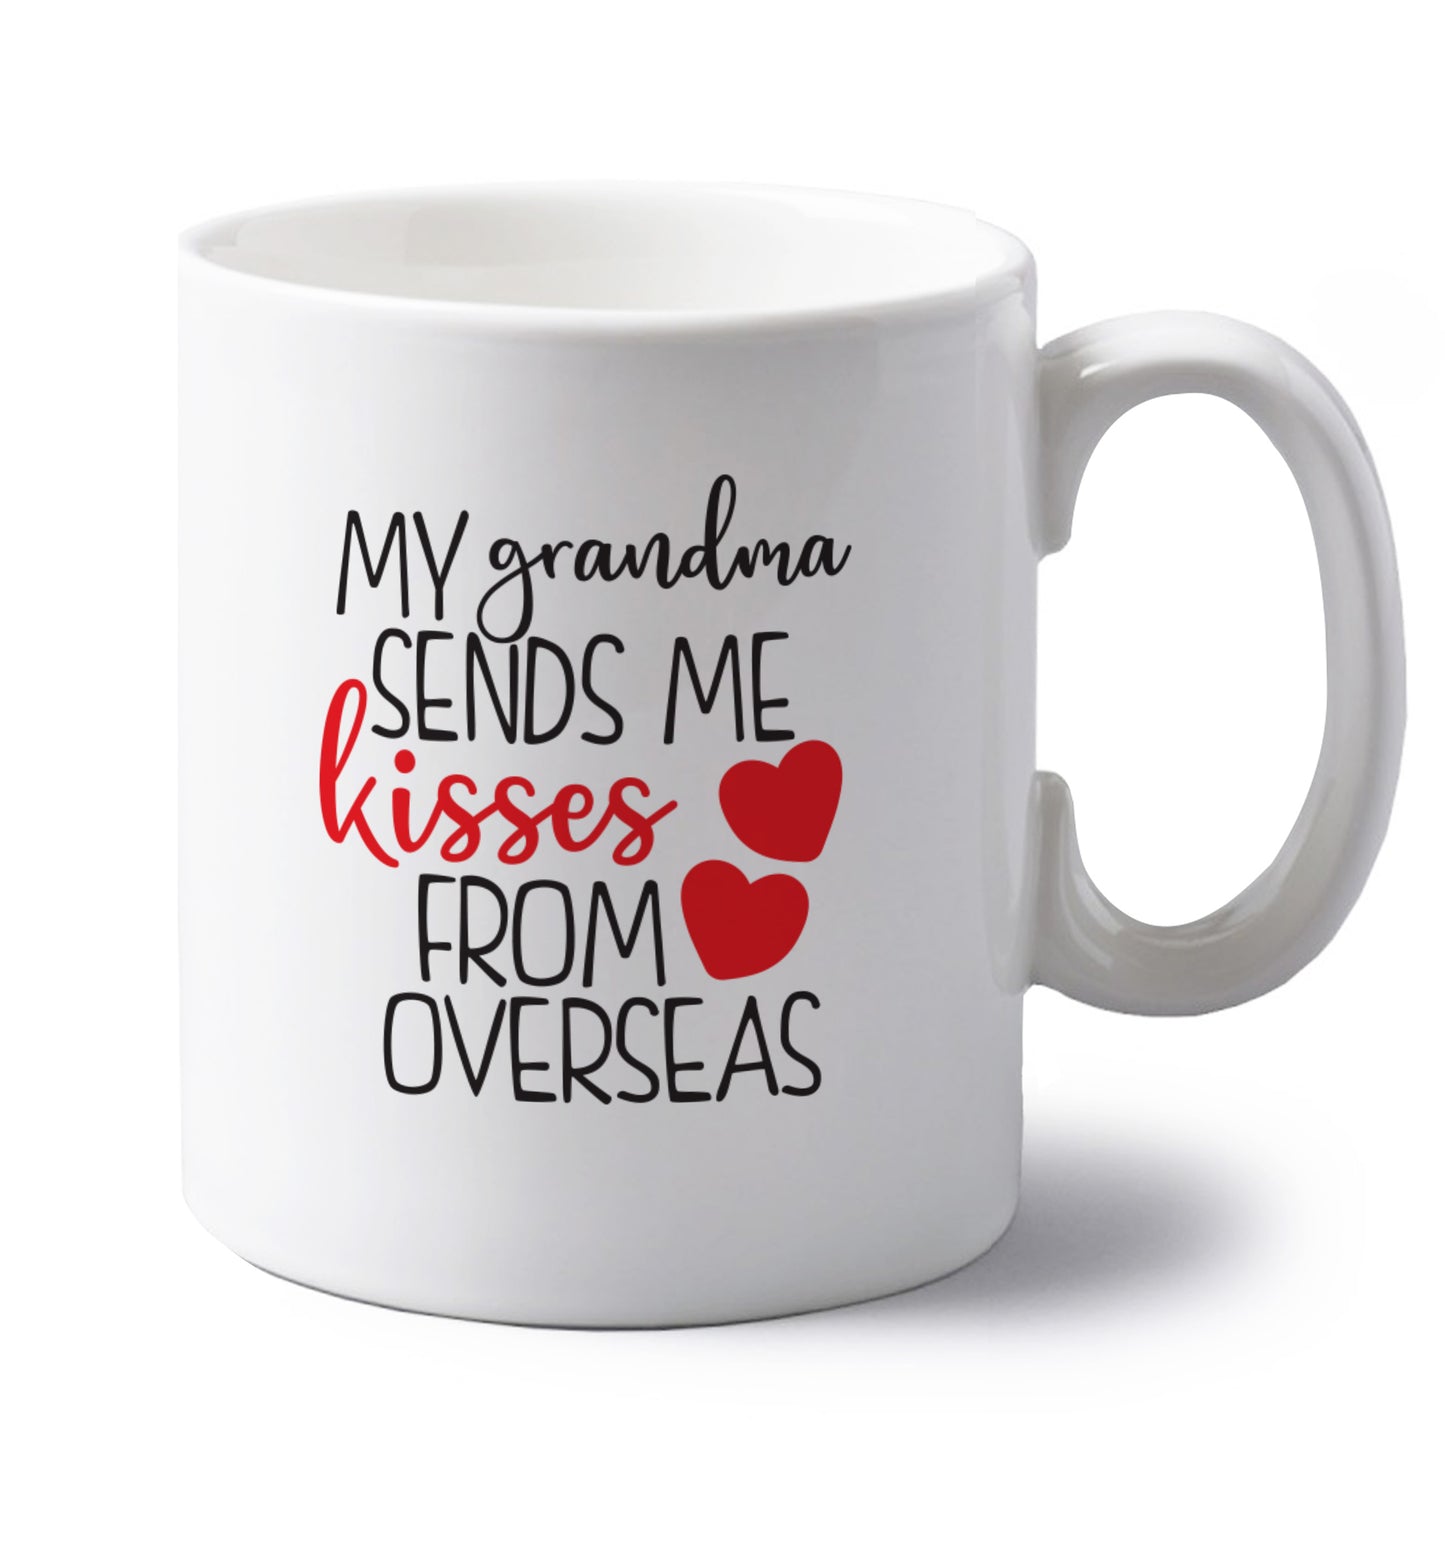 My Grandma sends me kisses from overseas left handed white ceramic mug 